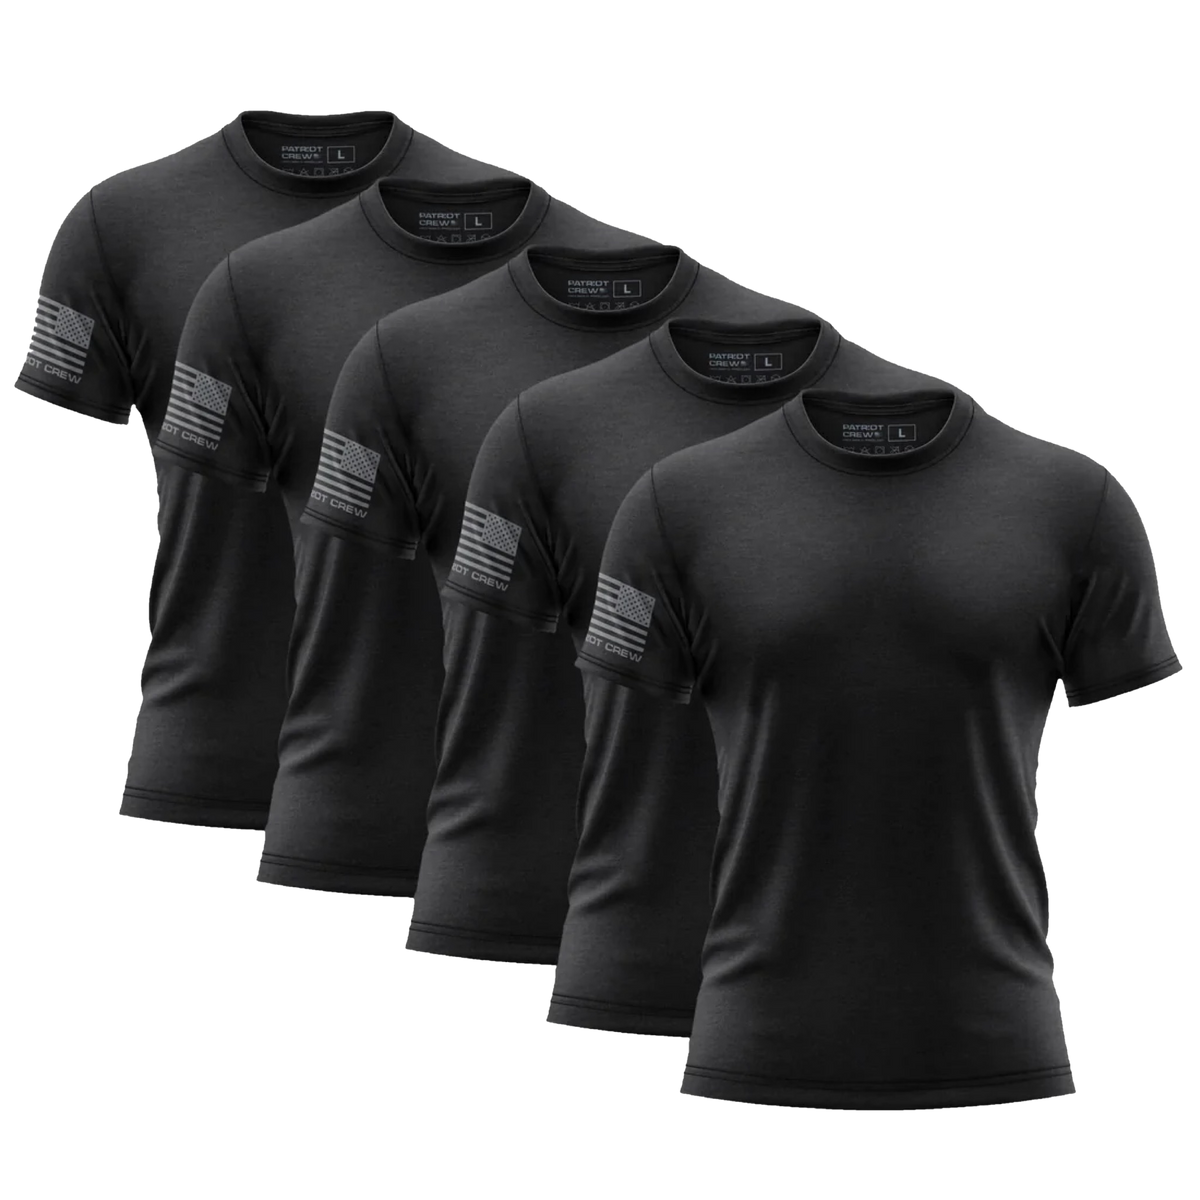 Black T-Shirt (5 Pack)